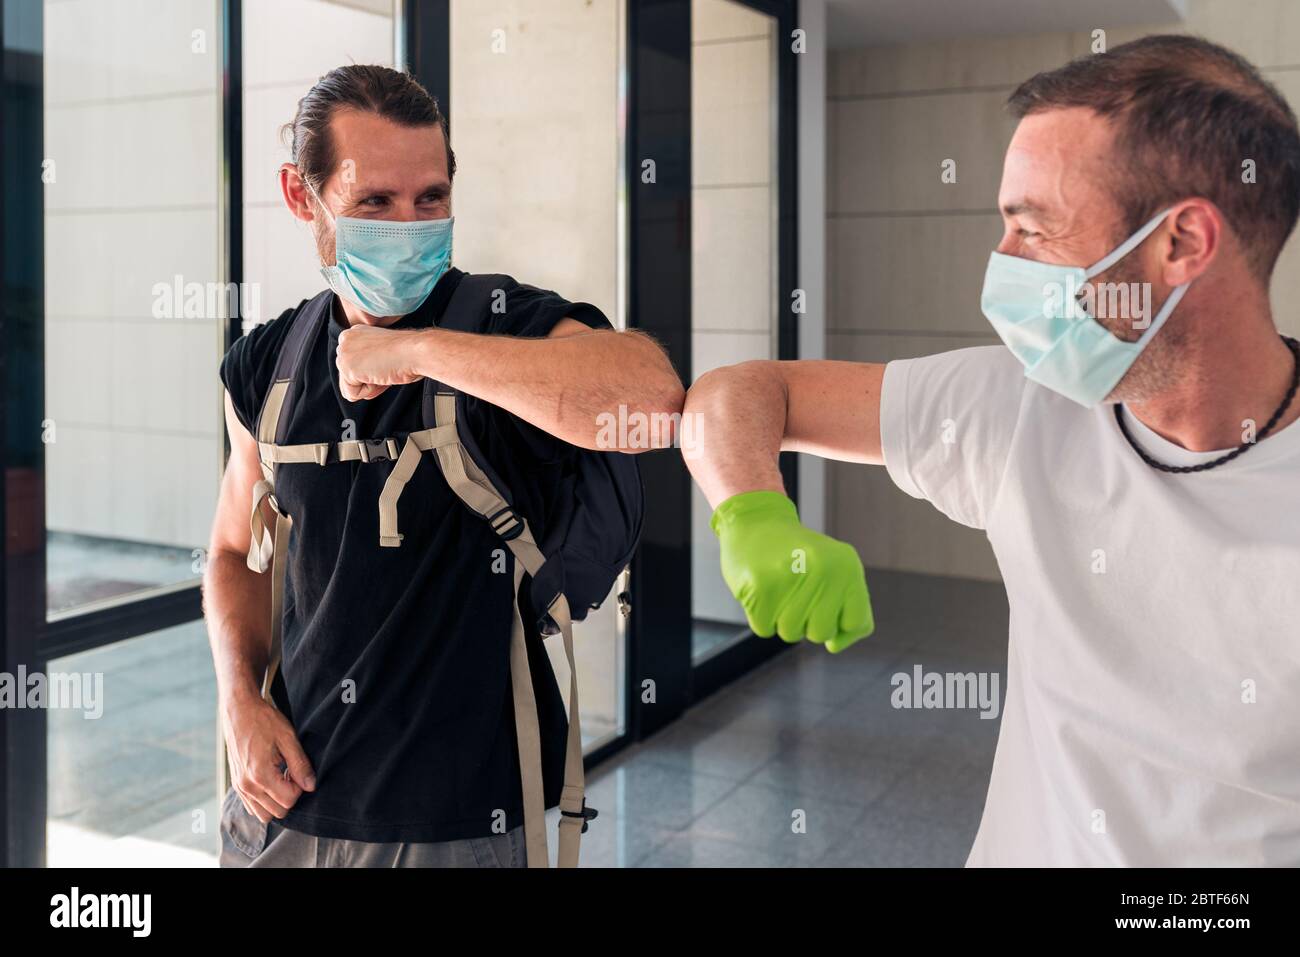 Concetto: Coronavirus, covid-19. Due amici maschi si salutano con i loro gomiti all'ingresso di un edificio. Nuova normalità, pandemie ed epi Foto Stock